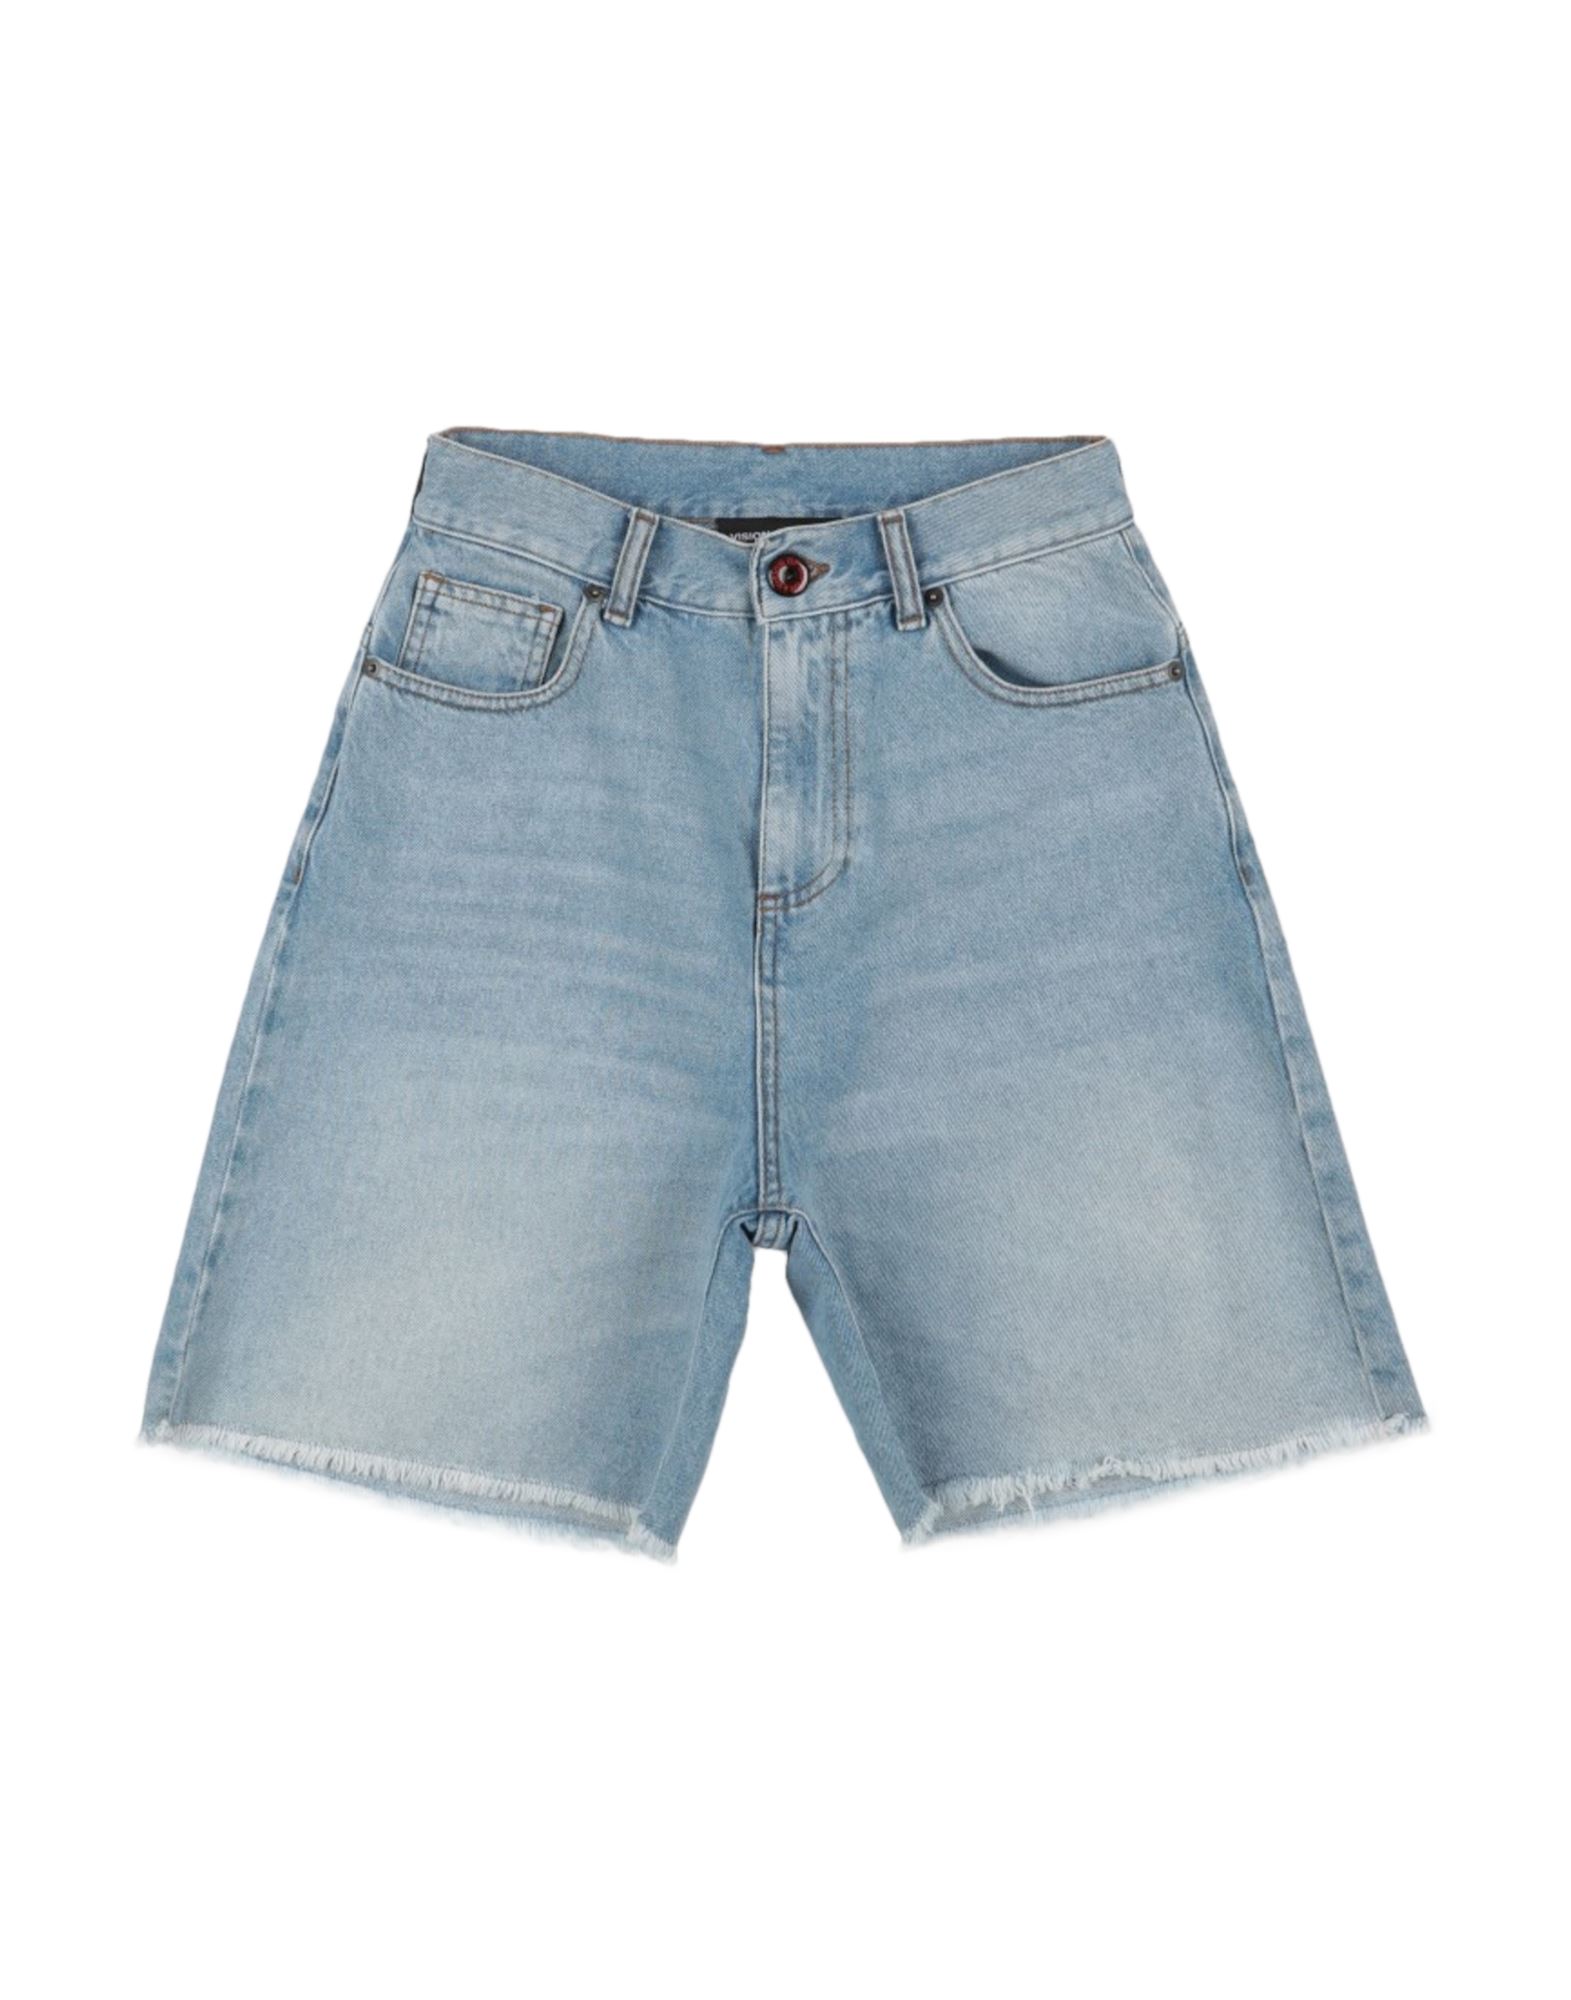 Shop Vision Of Super Man Denim Shorts Blue Size 30 Cotton